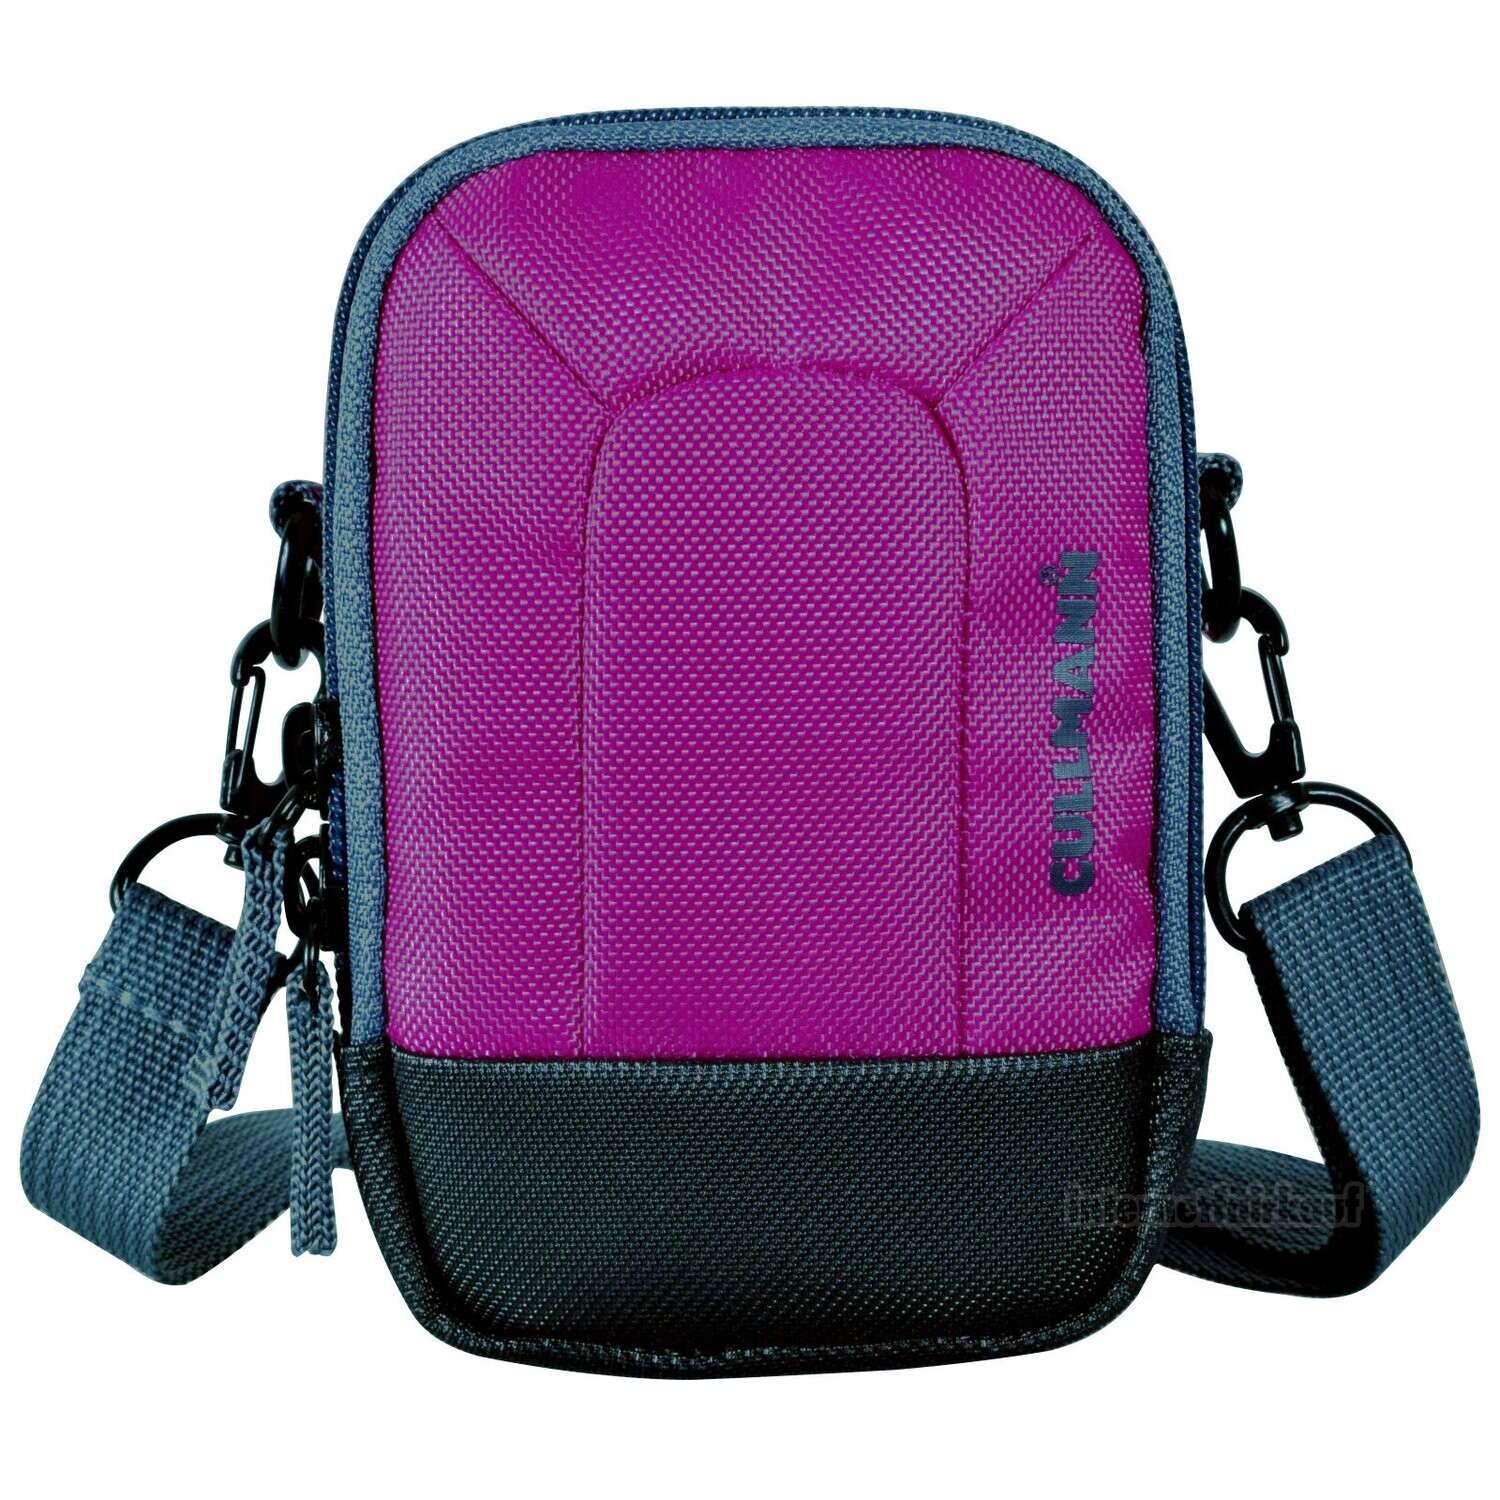 Kameratasche purple passend für Fujifilm X10 - Fototasche